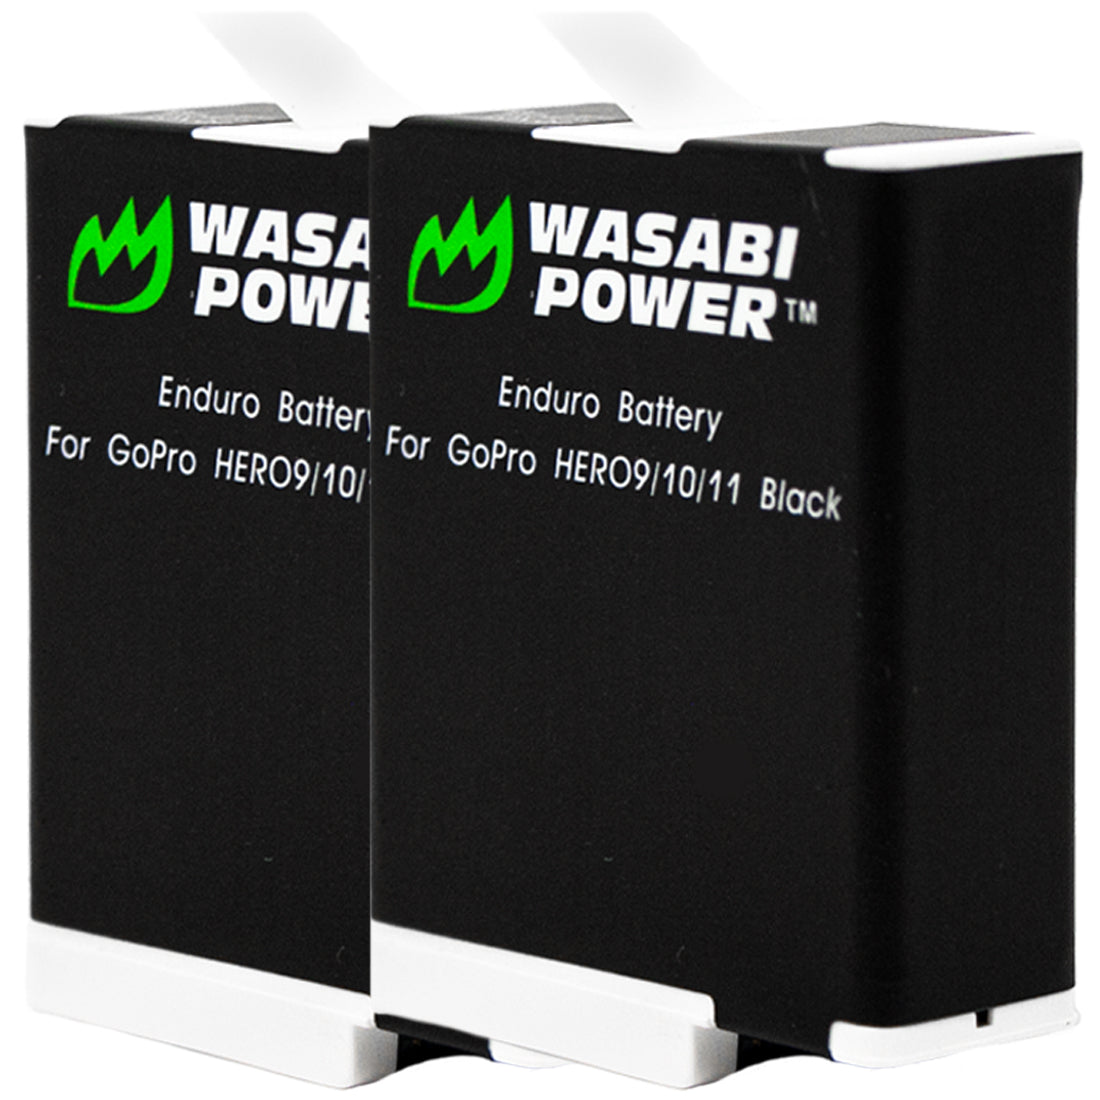 Power HERO11, for HERO10, HERO9 by GoPro Battery Enduro HERO12, (2-Pack) – Wasabi Was